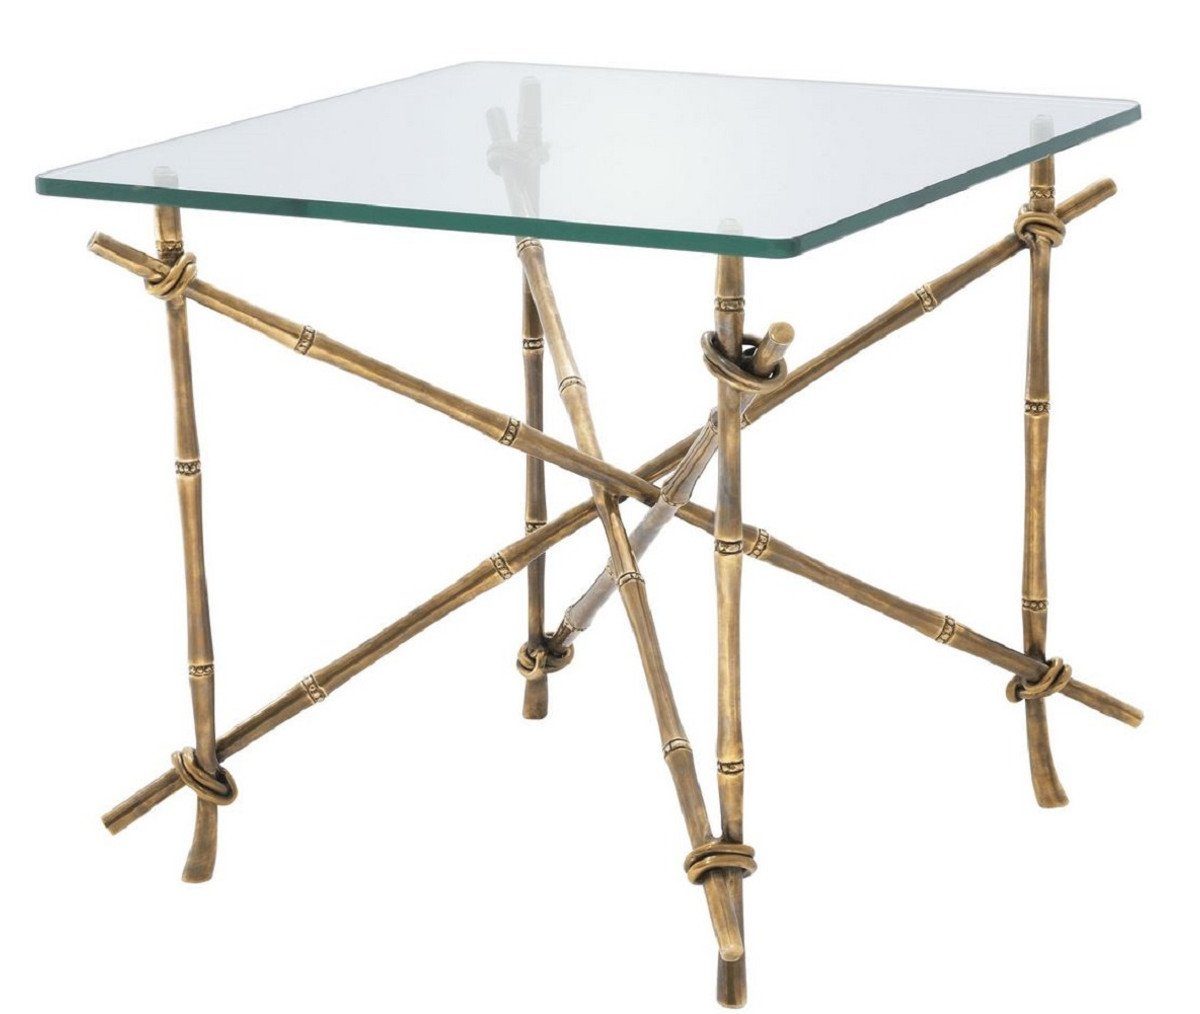 Casa Padrino Beistelltisch Luxus Beistelltisch Vintage Messingfarben 55 x 55 x H. 49,5 cm - Messing Tisch mit Glasplatte - Luxus Möbel